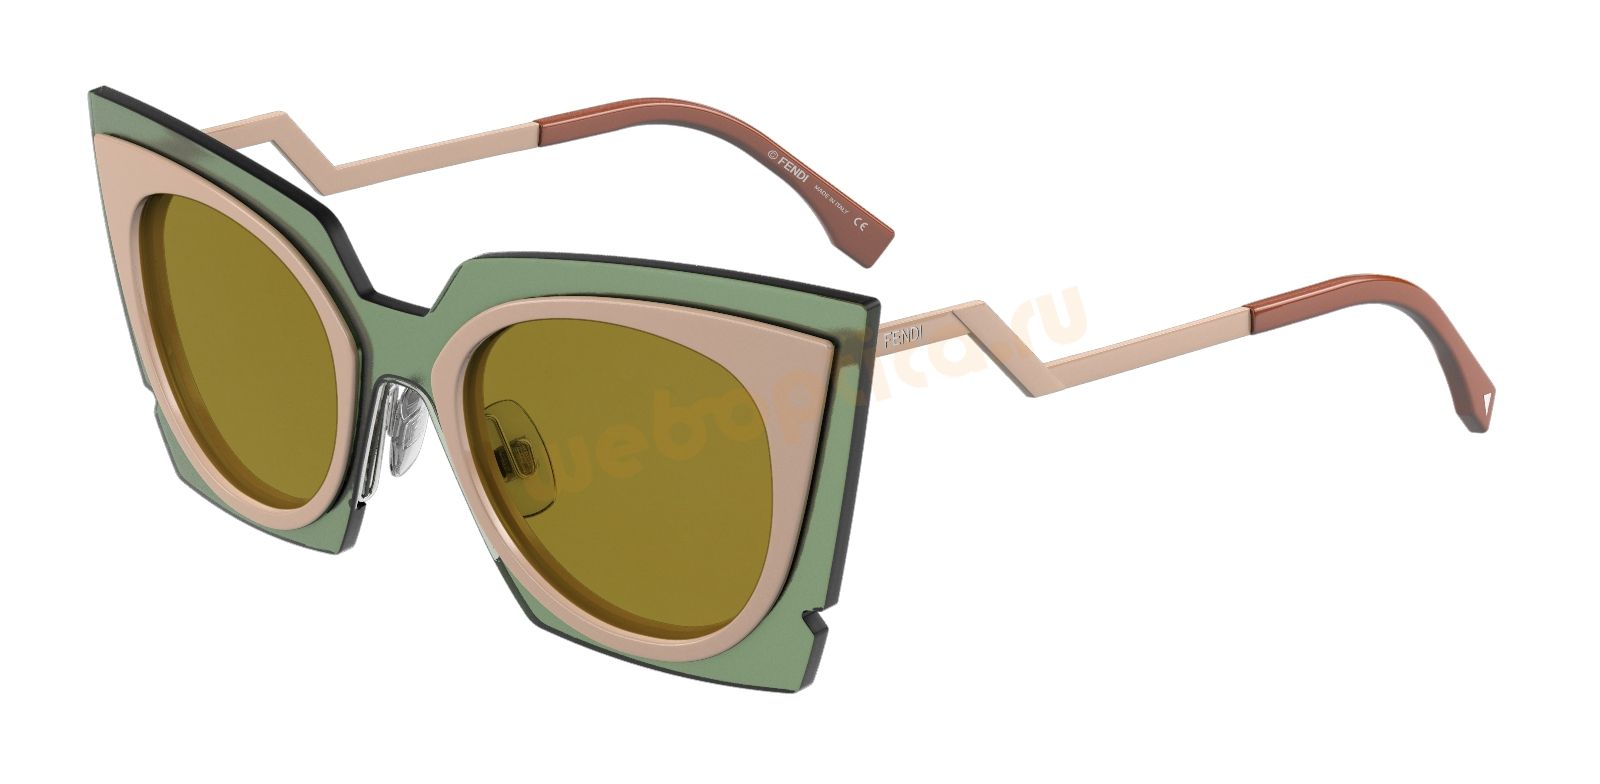 Солнцезащитные очки FENDI FF 0117S-IC7 купить в москве, цена, интернет магазин